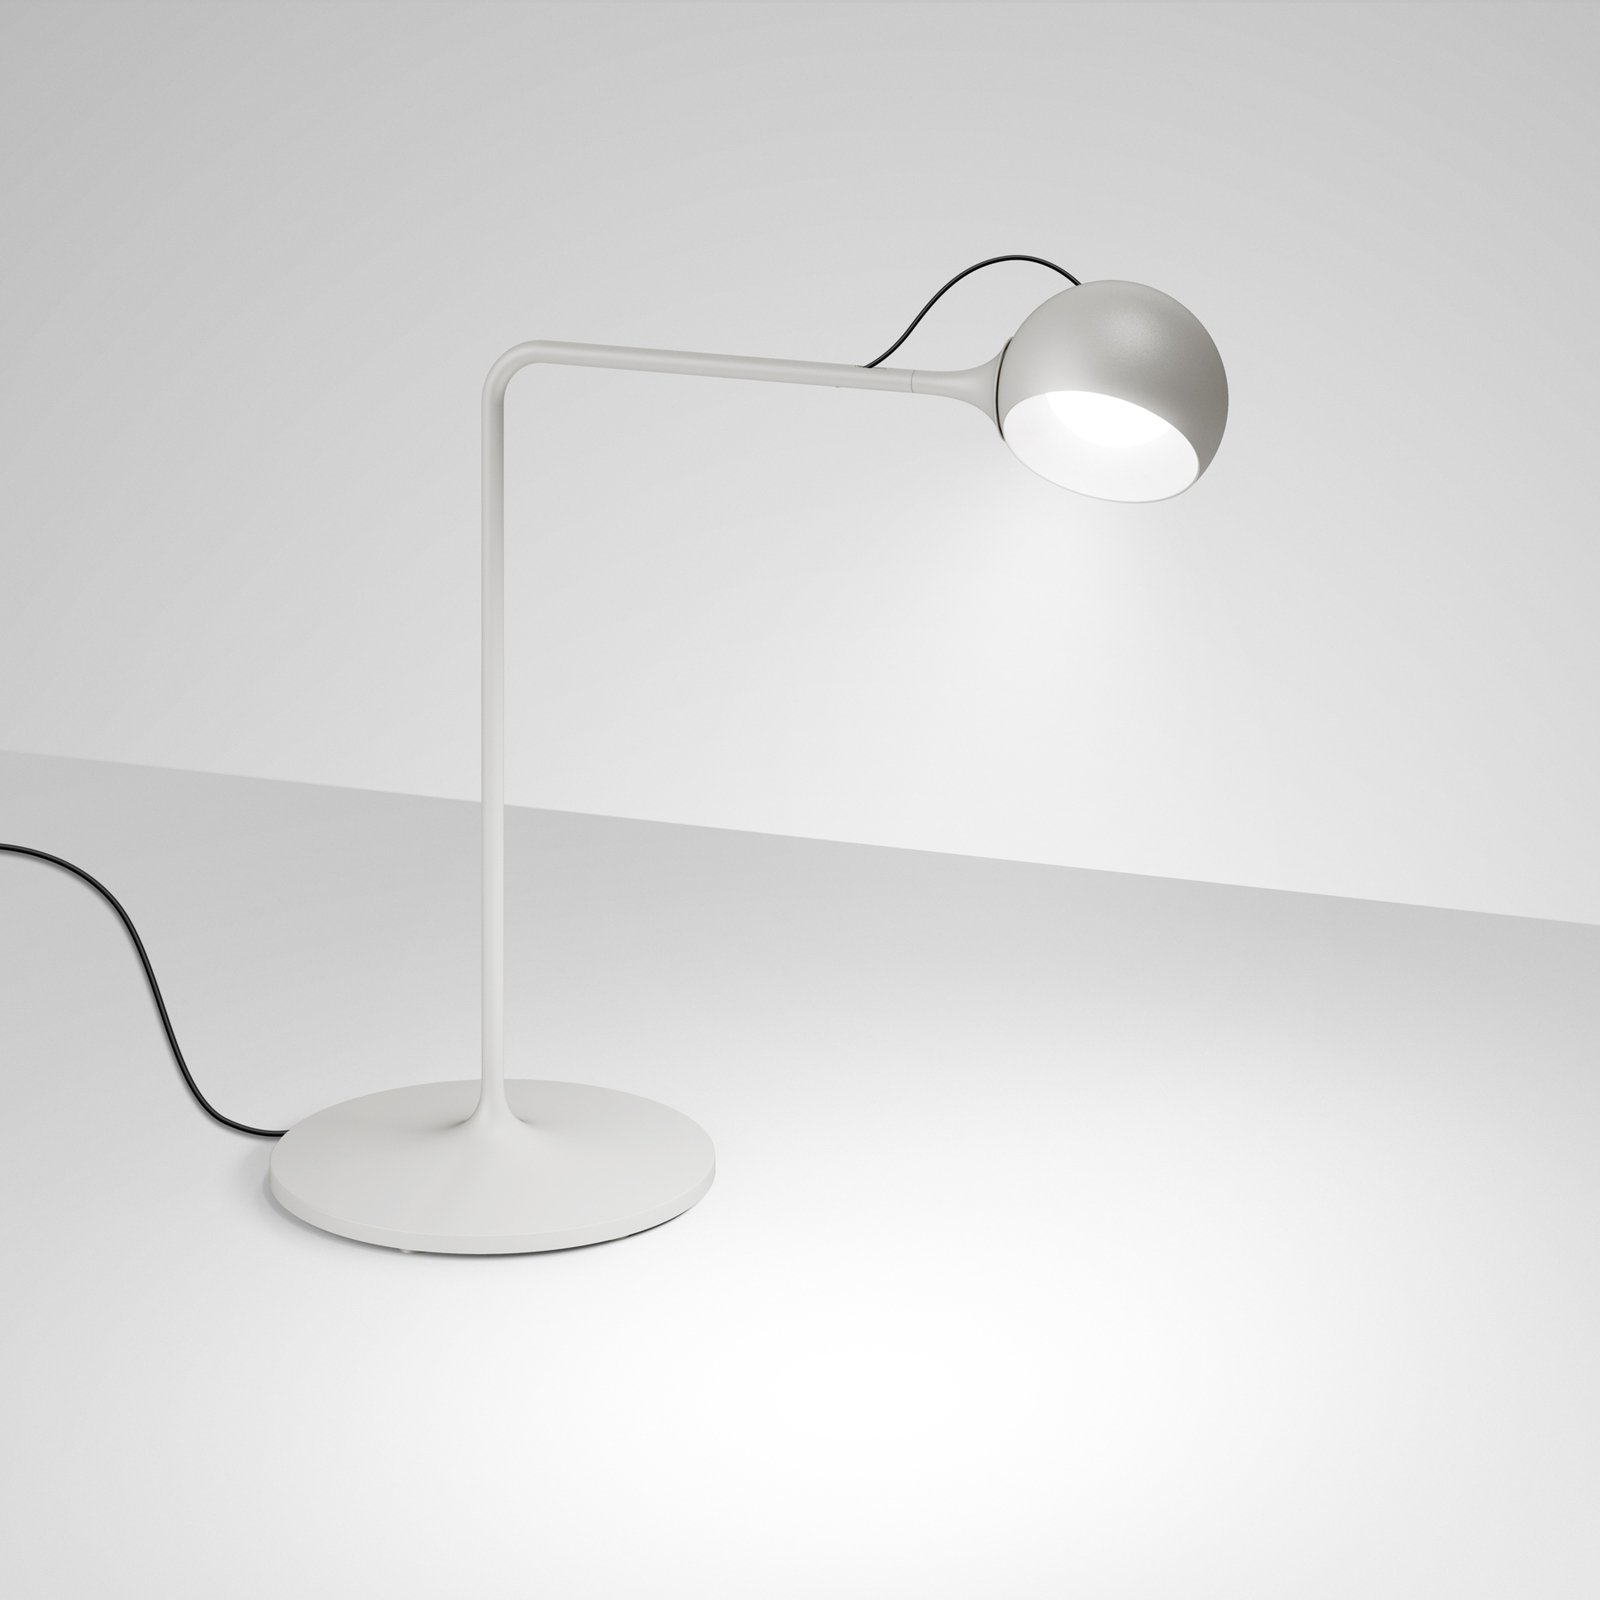 Artemide lxa LED asztali világítás, fehér-szürke